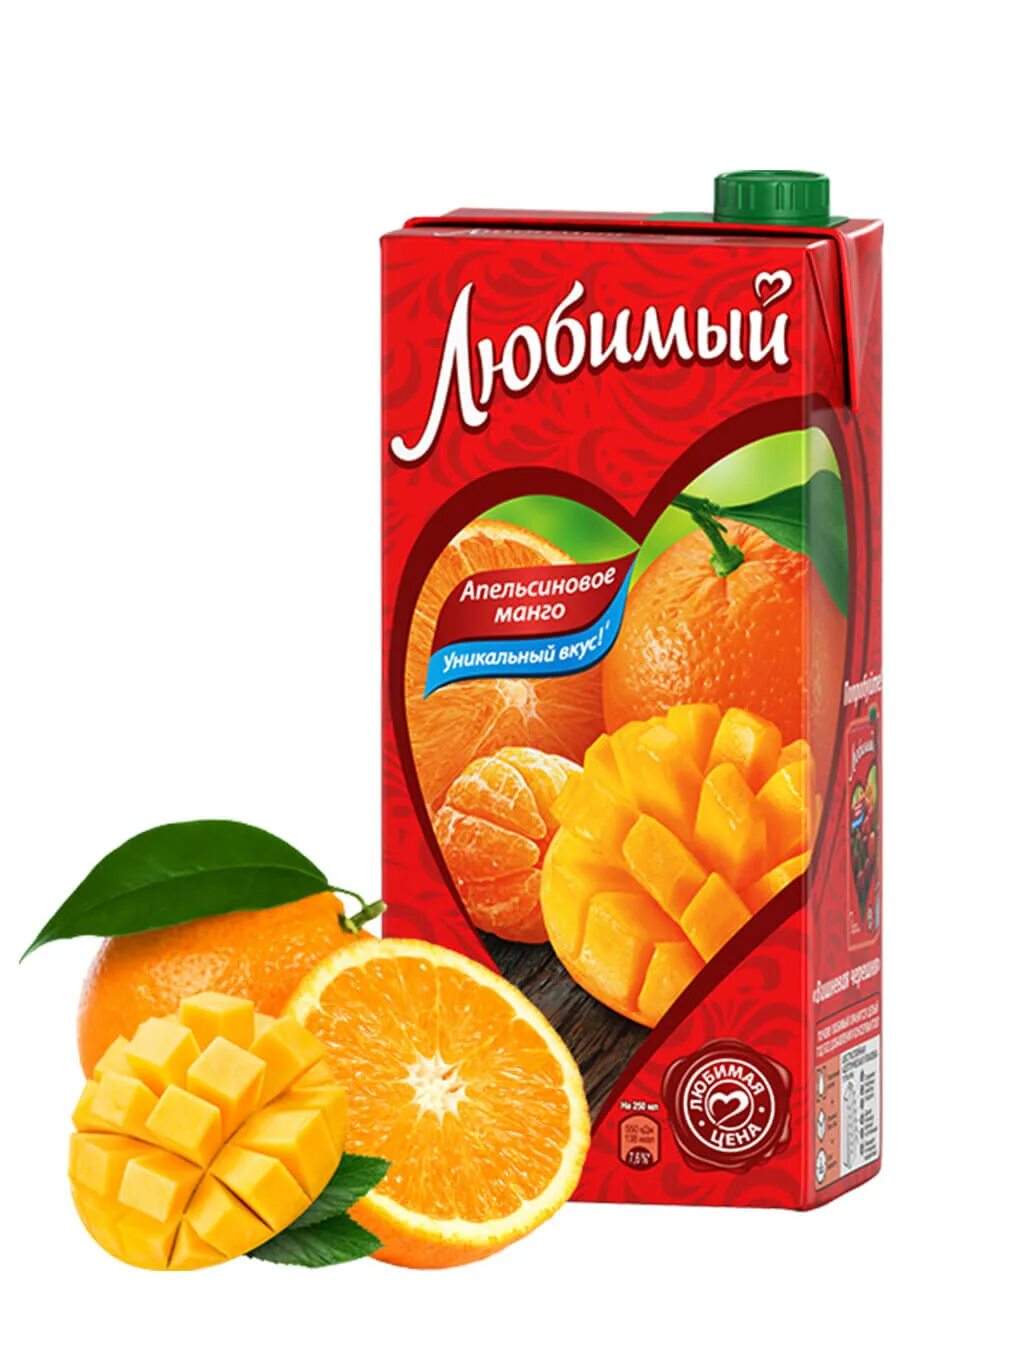 Сок любимый апельсин. Сок любимый апельсиновое манго 1.93л. Любимый 1л апельсин манго сок. Сок любимый апельсин 1л. Напиток любимый апельсин-манго-мандарин 0,95.